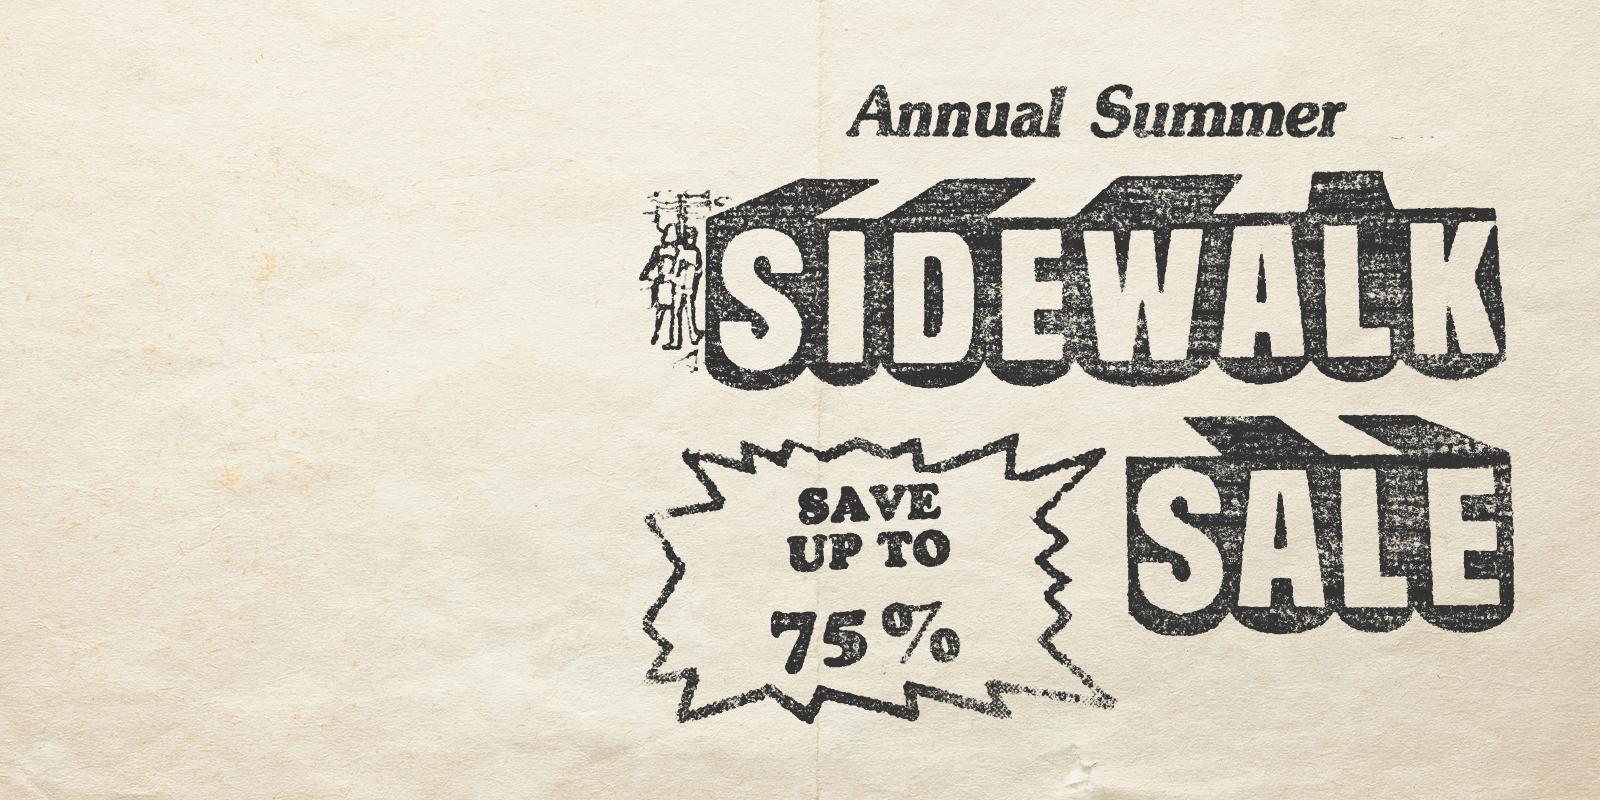 Sidewalk sale